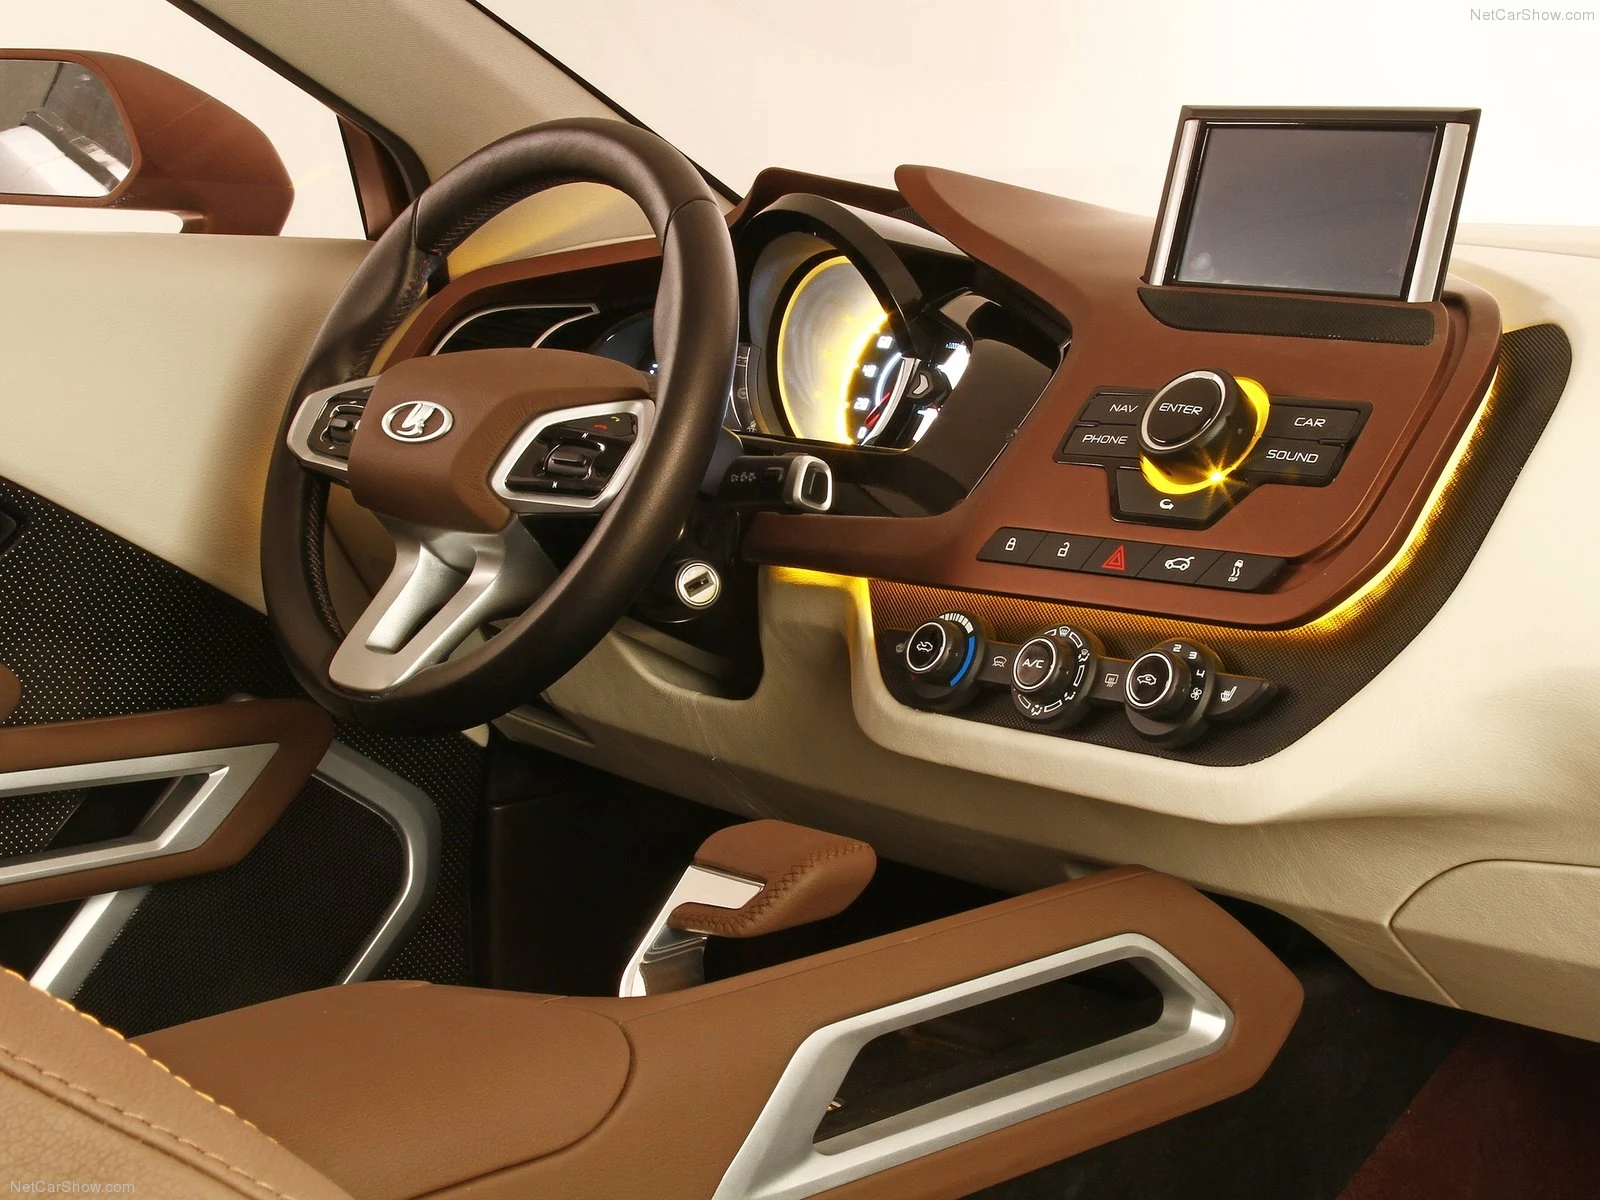 Hình ảnh xe ô tô Lada XRay Concept 2012 & nội ngoại thất